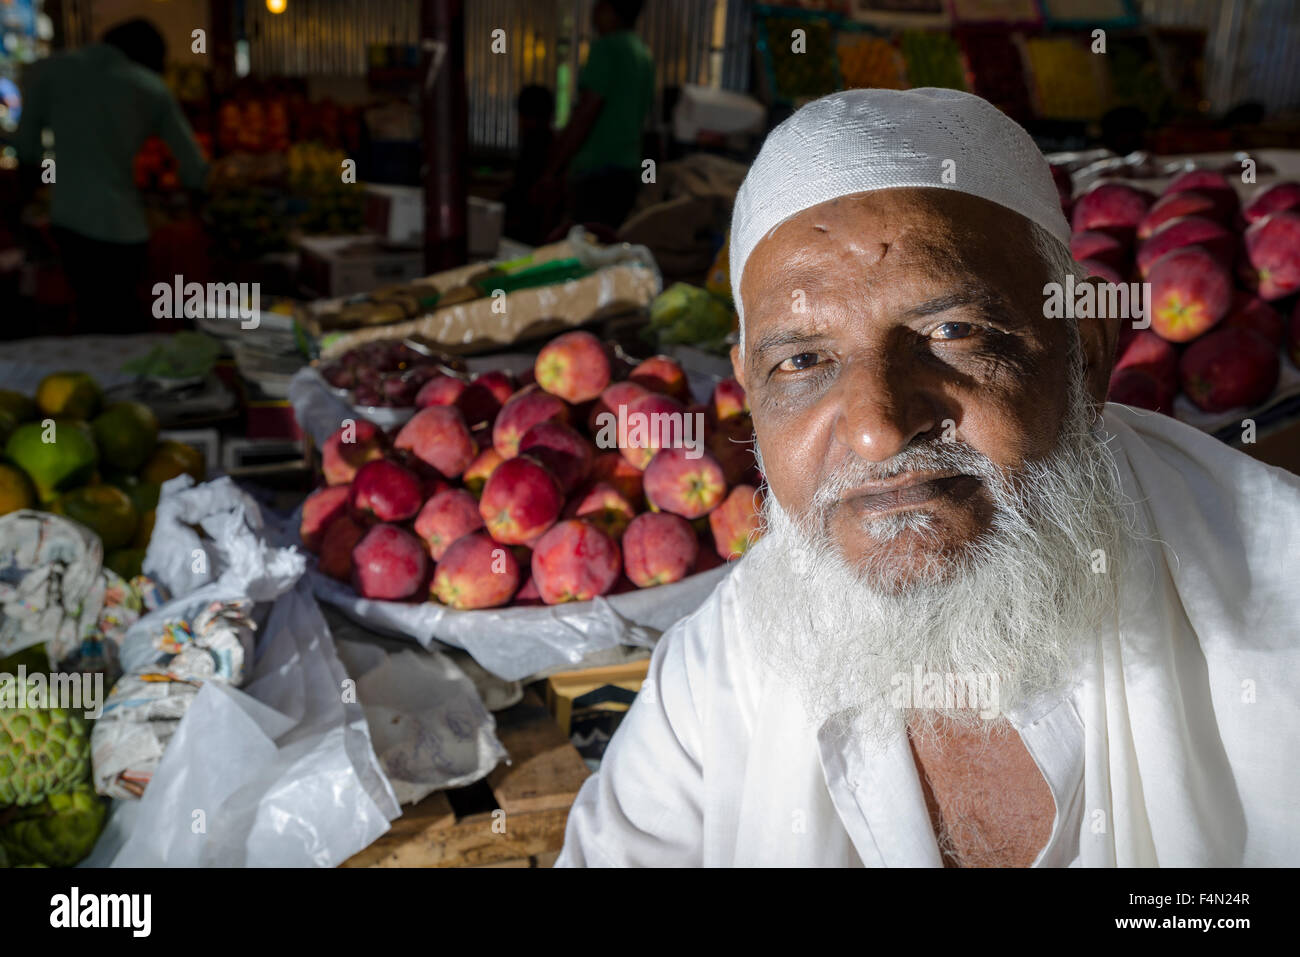 Portrait d'un vendeur à crawfort marché, l'un des plus anciens marchés de la ville de légumes Banque D'Images